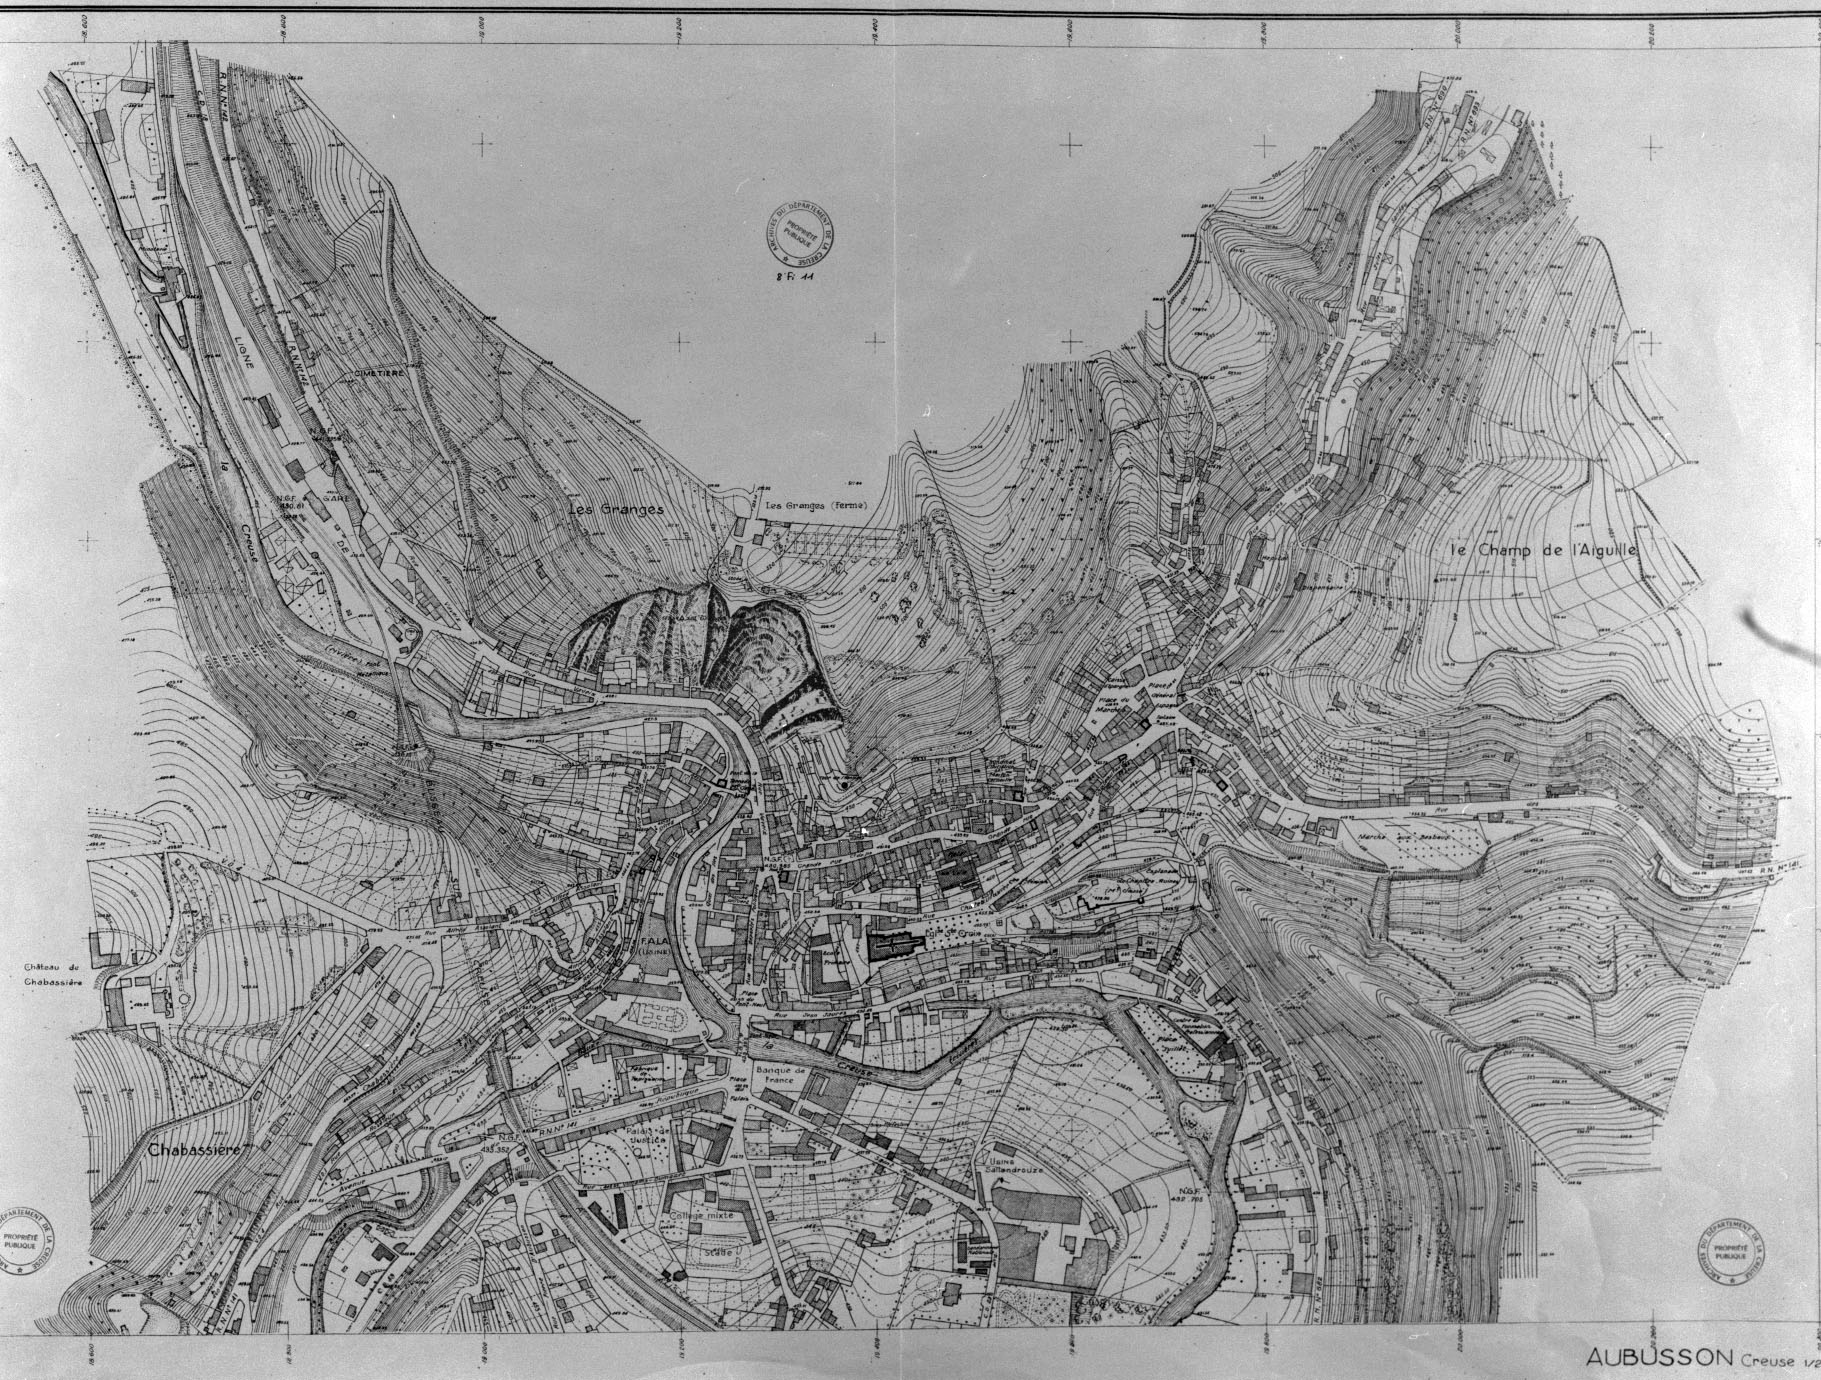 Plan de la commune d'Aubusson, dressé en 1949 par le Ministère de la Reconstruction et de l'Urbanisme (AC Aubusson) : on y distingue, au nord de la gare de chemin de fer, les bâtiments de la minoterie Boissy.